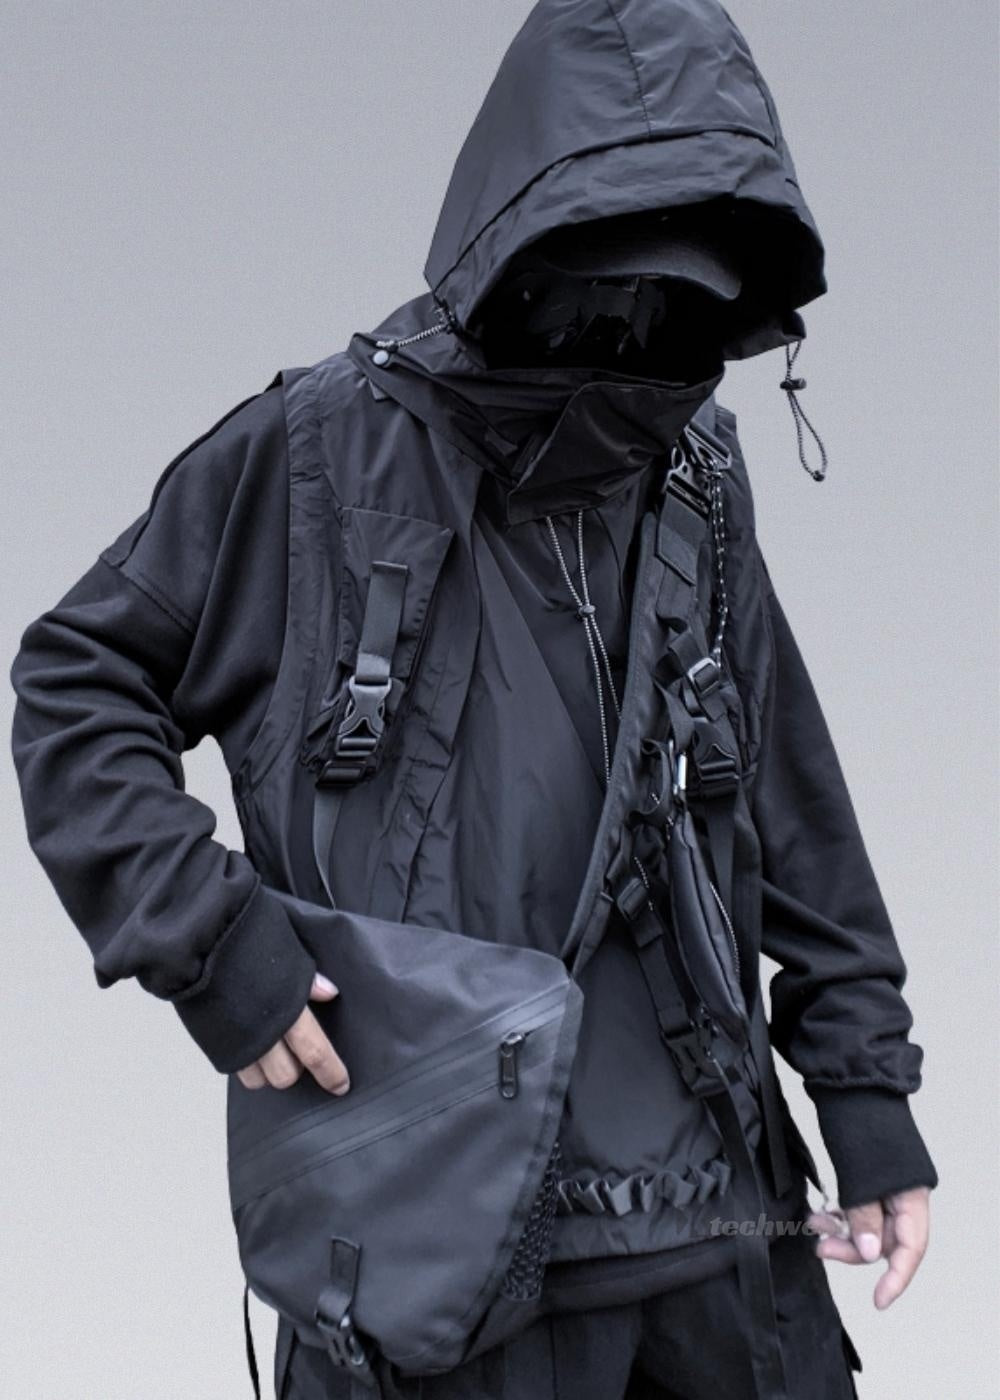 Darkwear Ninja Vest - Shop Darkwear Clothing - X